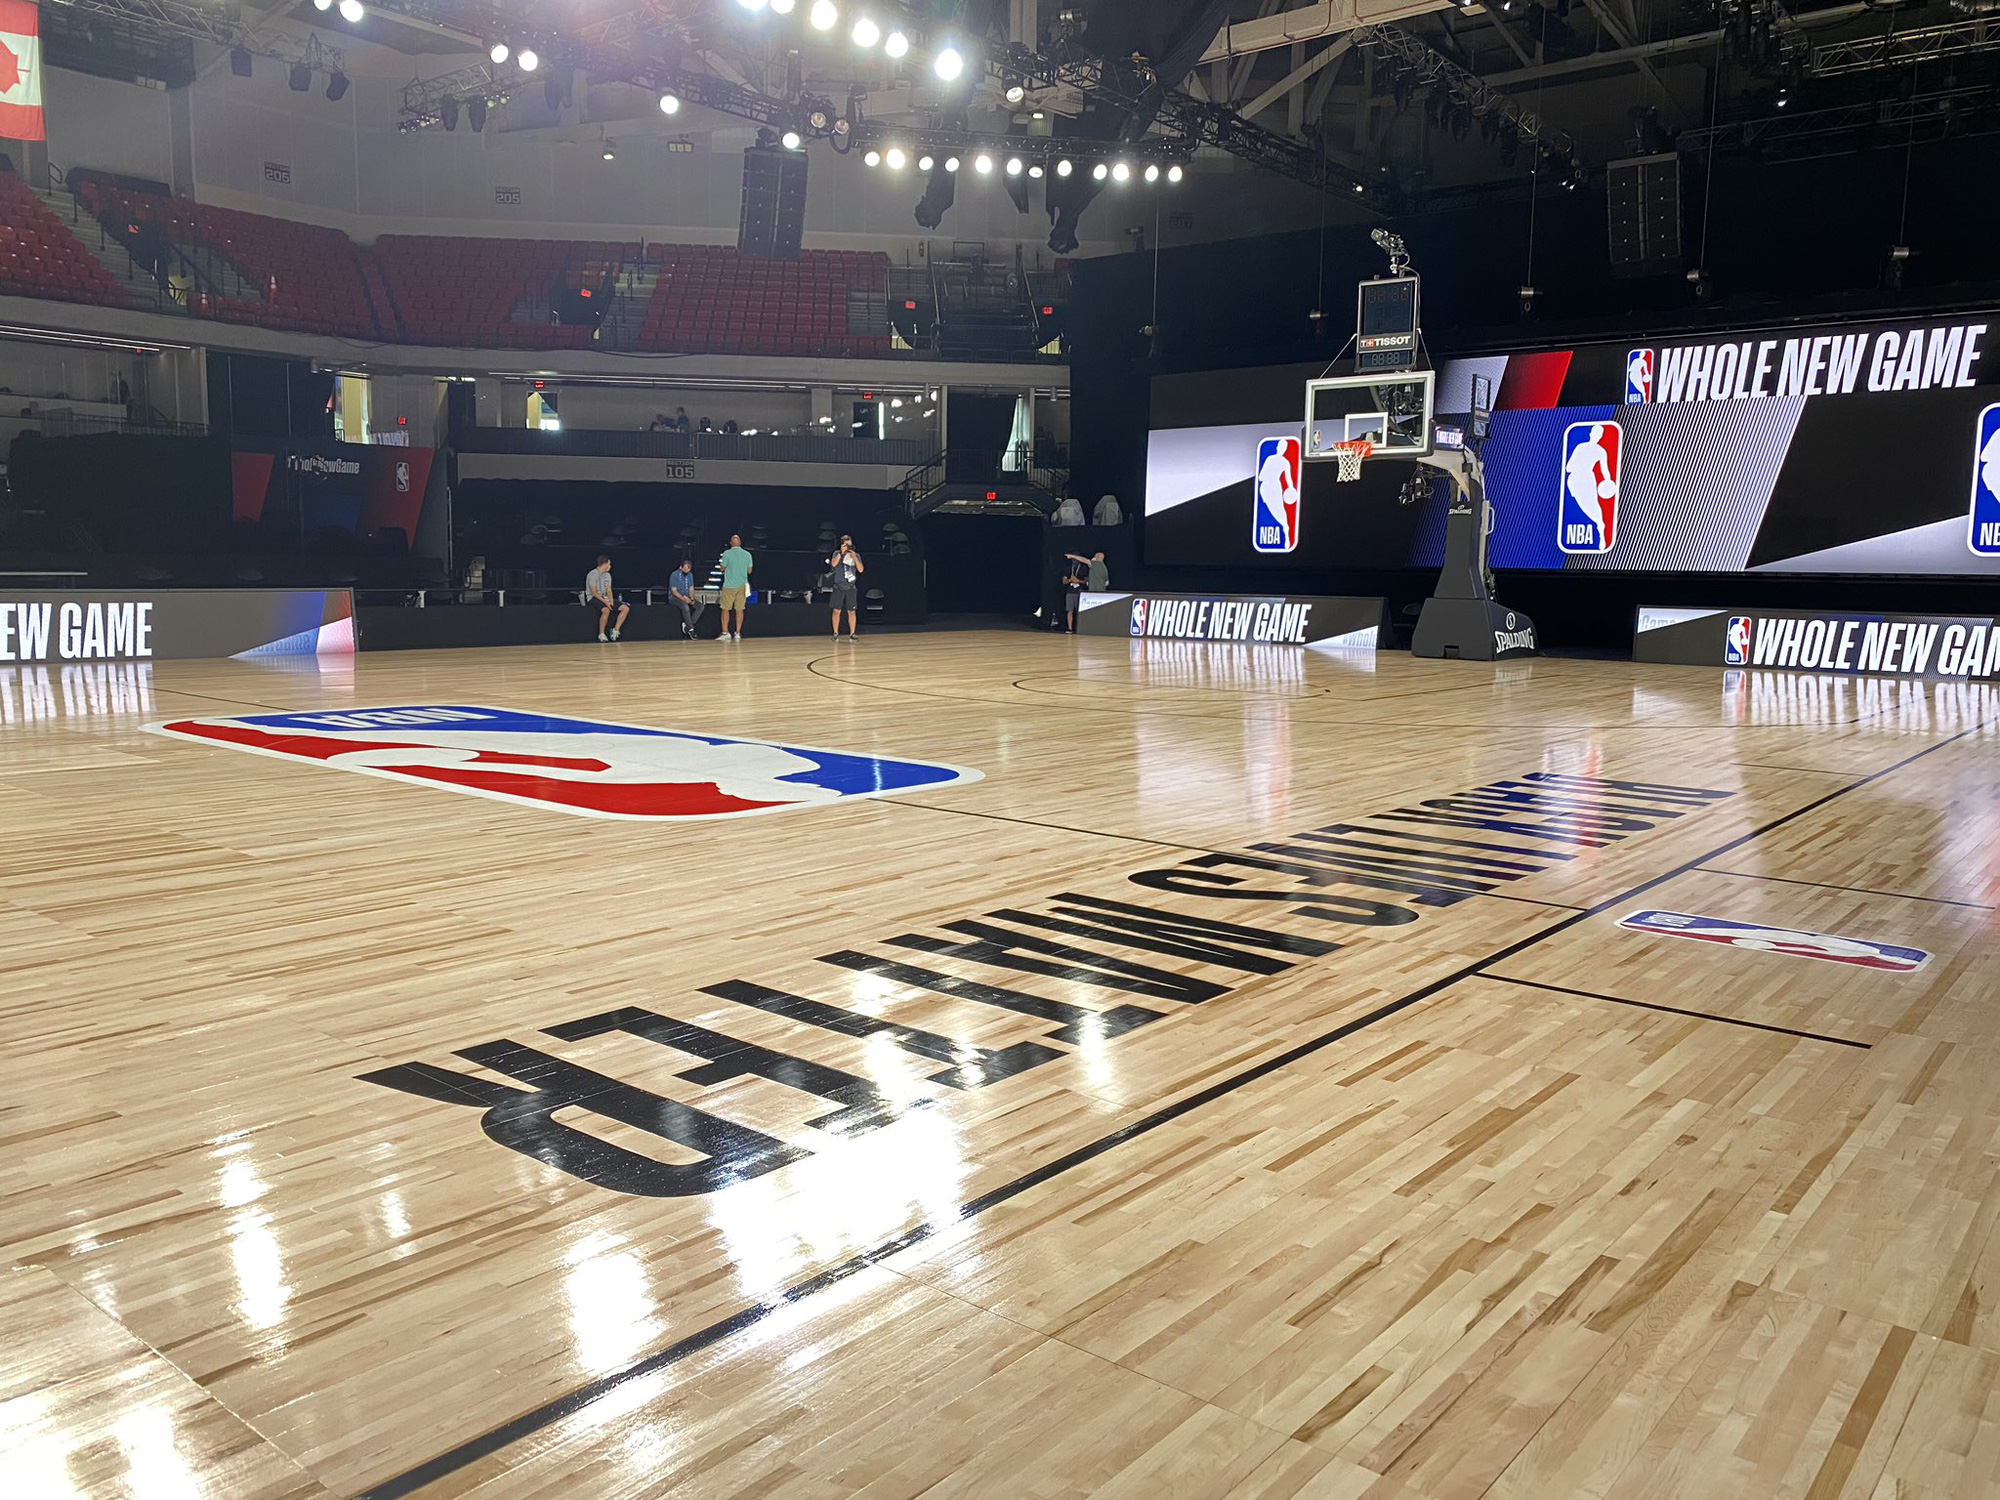 Lộ diện hình ảnh sân đấu chính thức của NBA trong khu cách ly Walt Disney World - Ảnh 6.